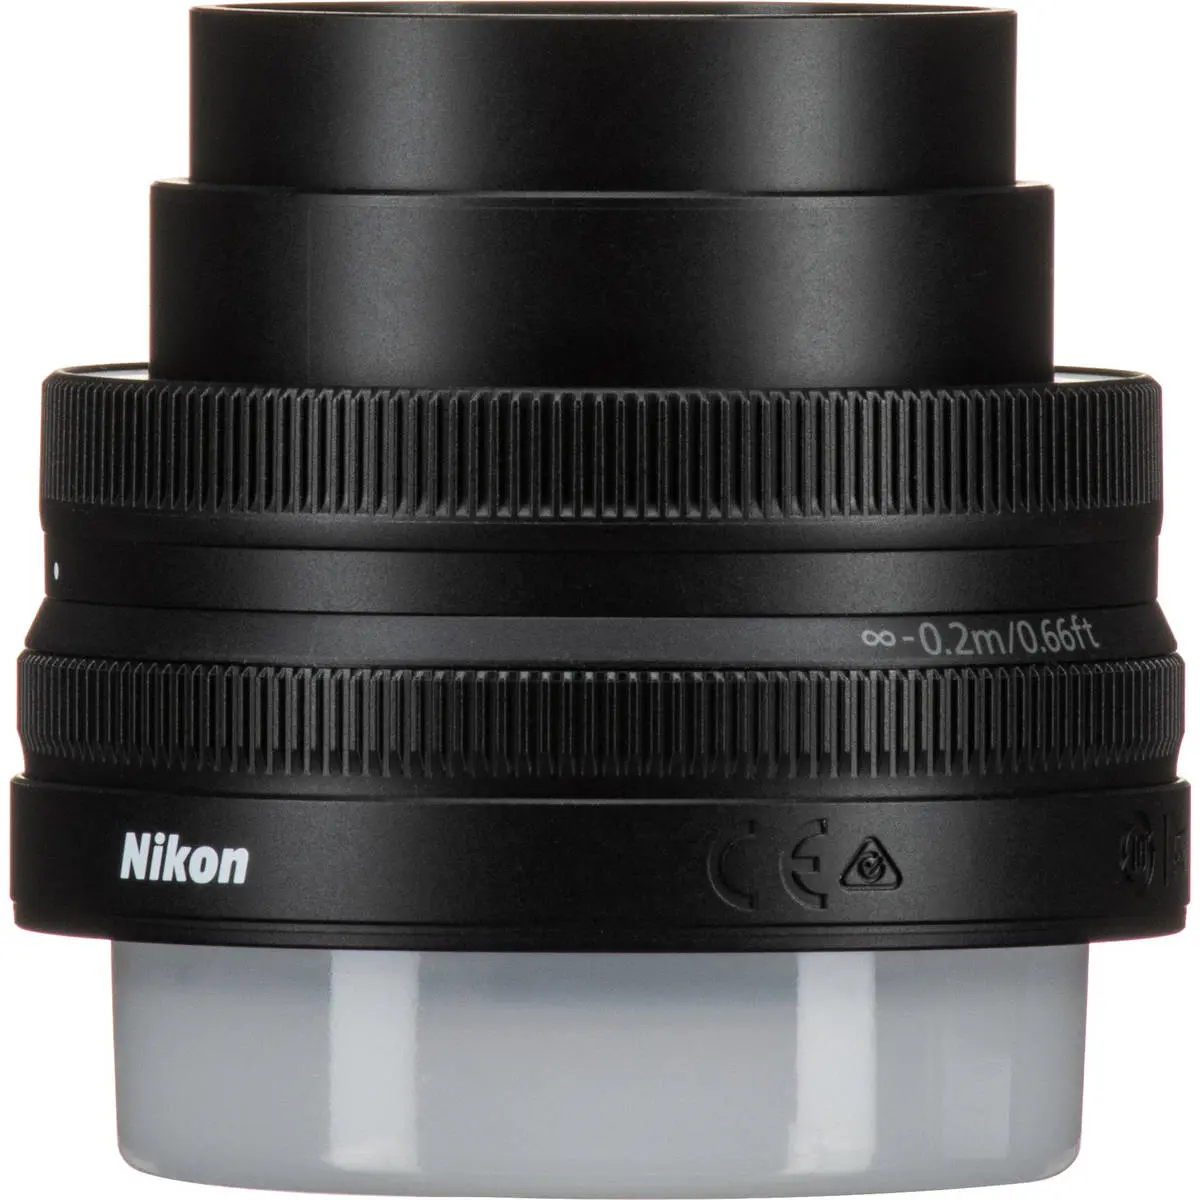 4. Nikon NIKKOR Z DX 16-50MM F/3.5-6.3 VR